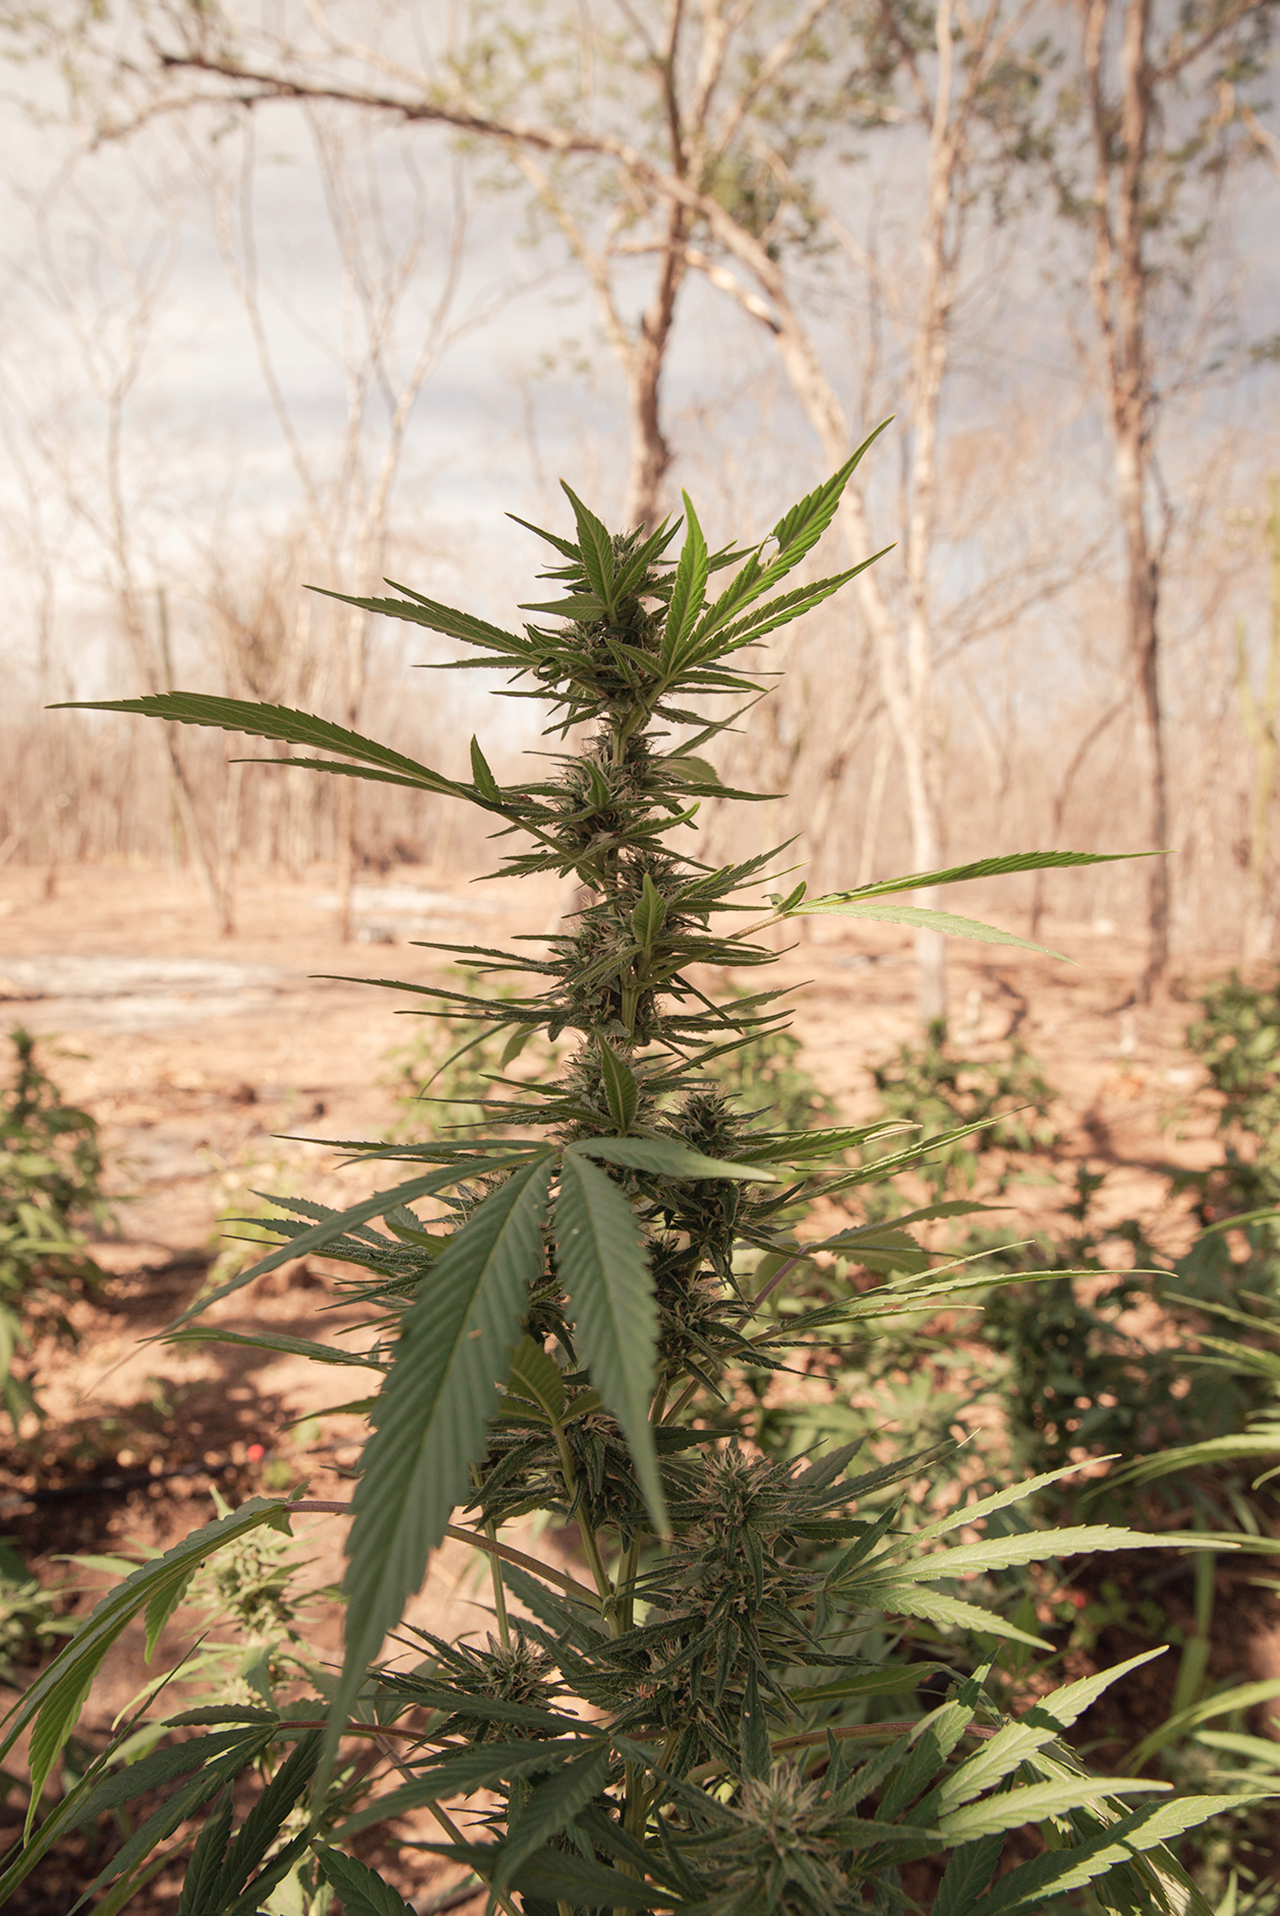 Semillas de cannabis semillas de marihuana semillas secas para plantar  aisladas sobre fondo blanco